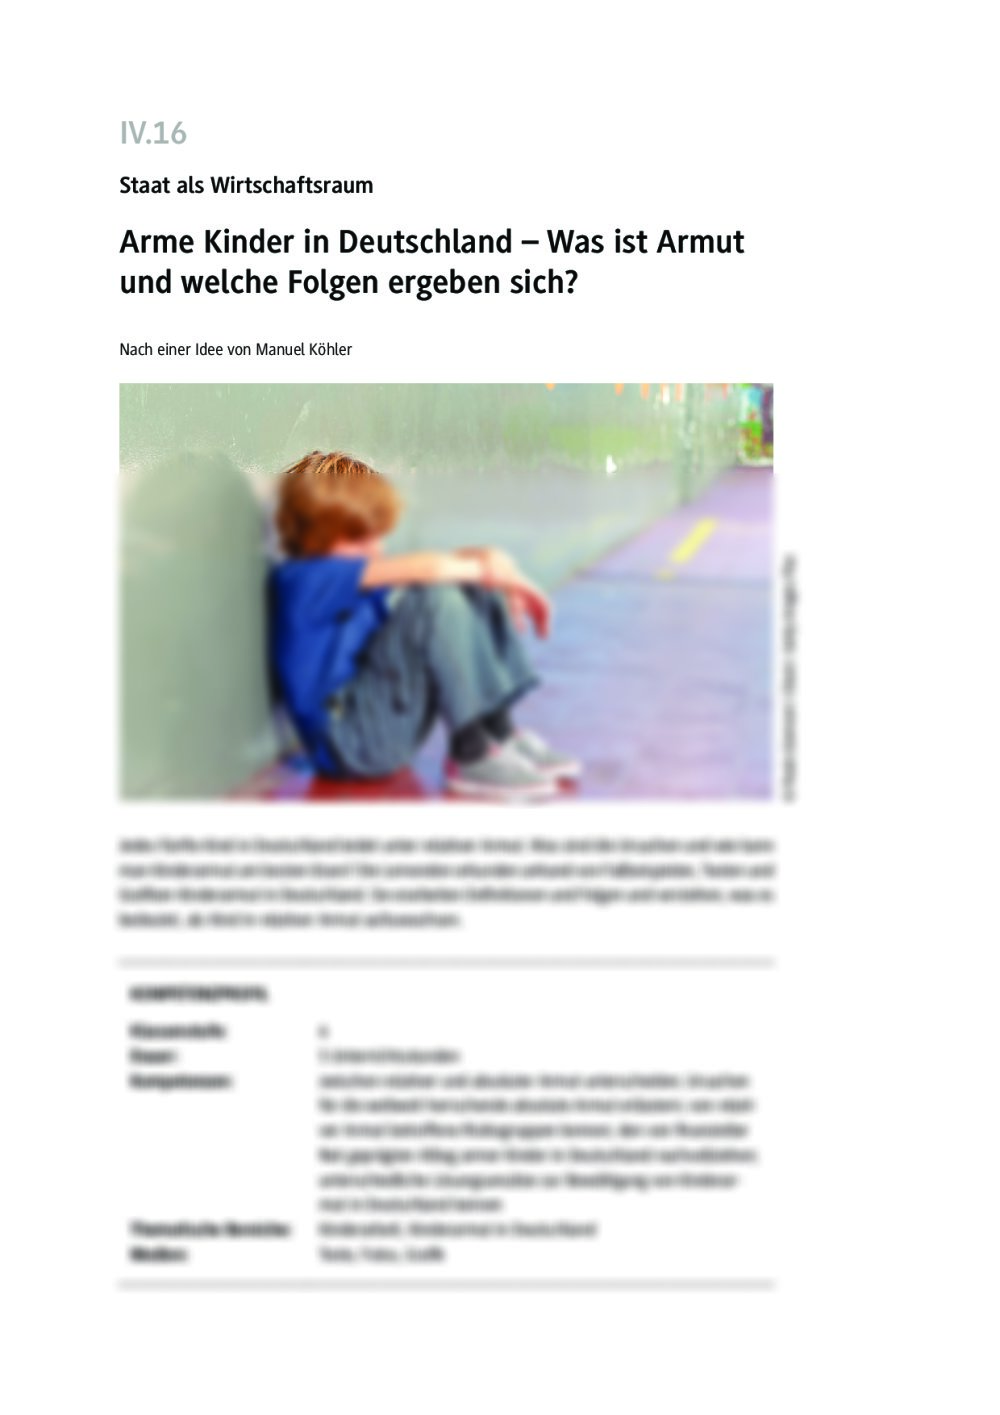 Arme Kinder in Deutschland - Seite 1